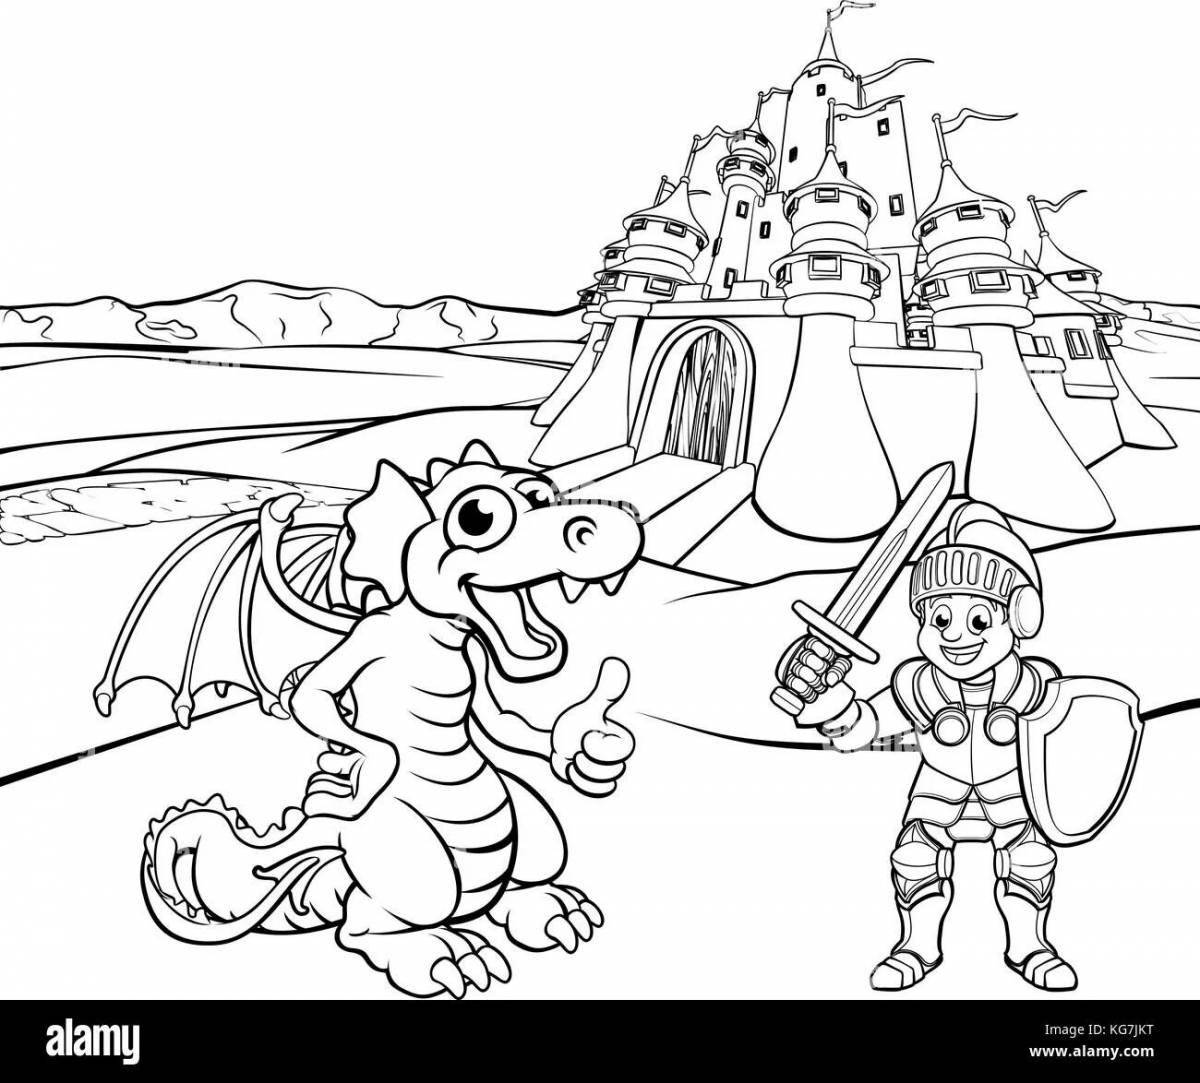 Palace coloring princess knight and dragon